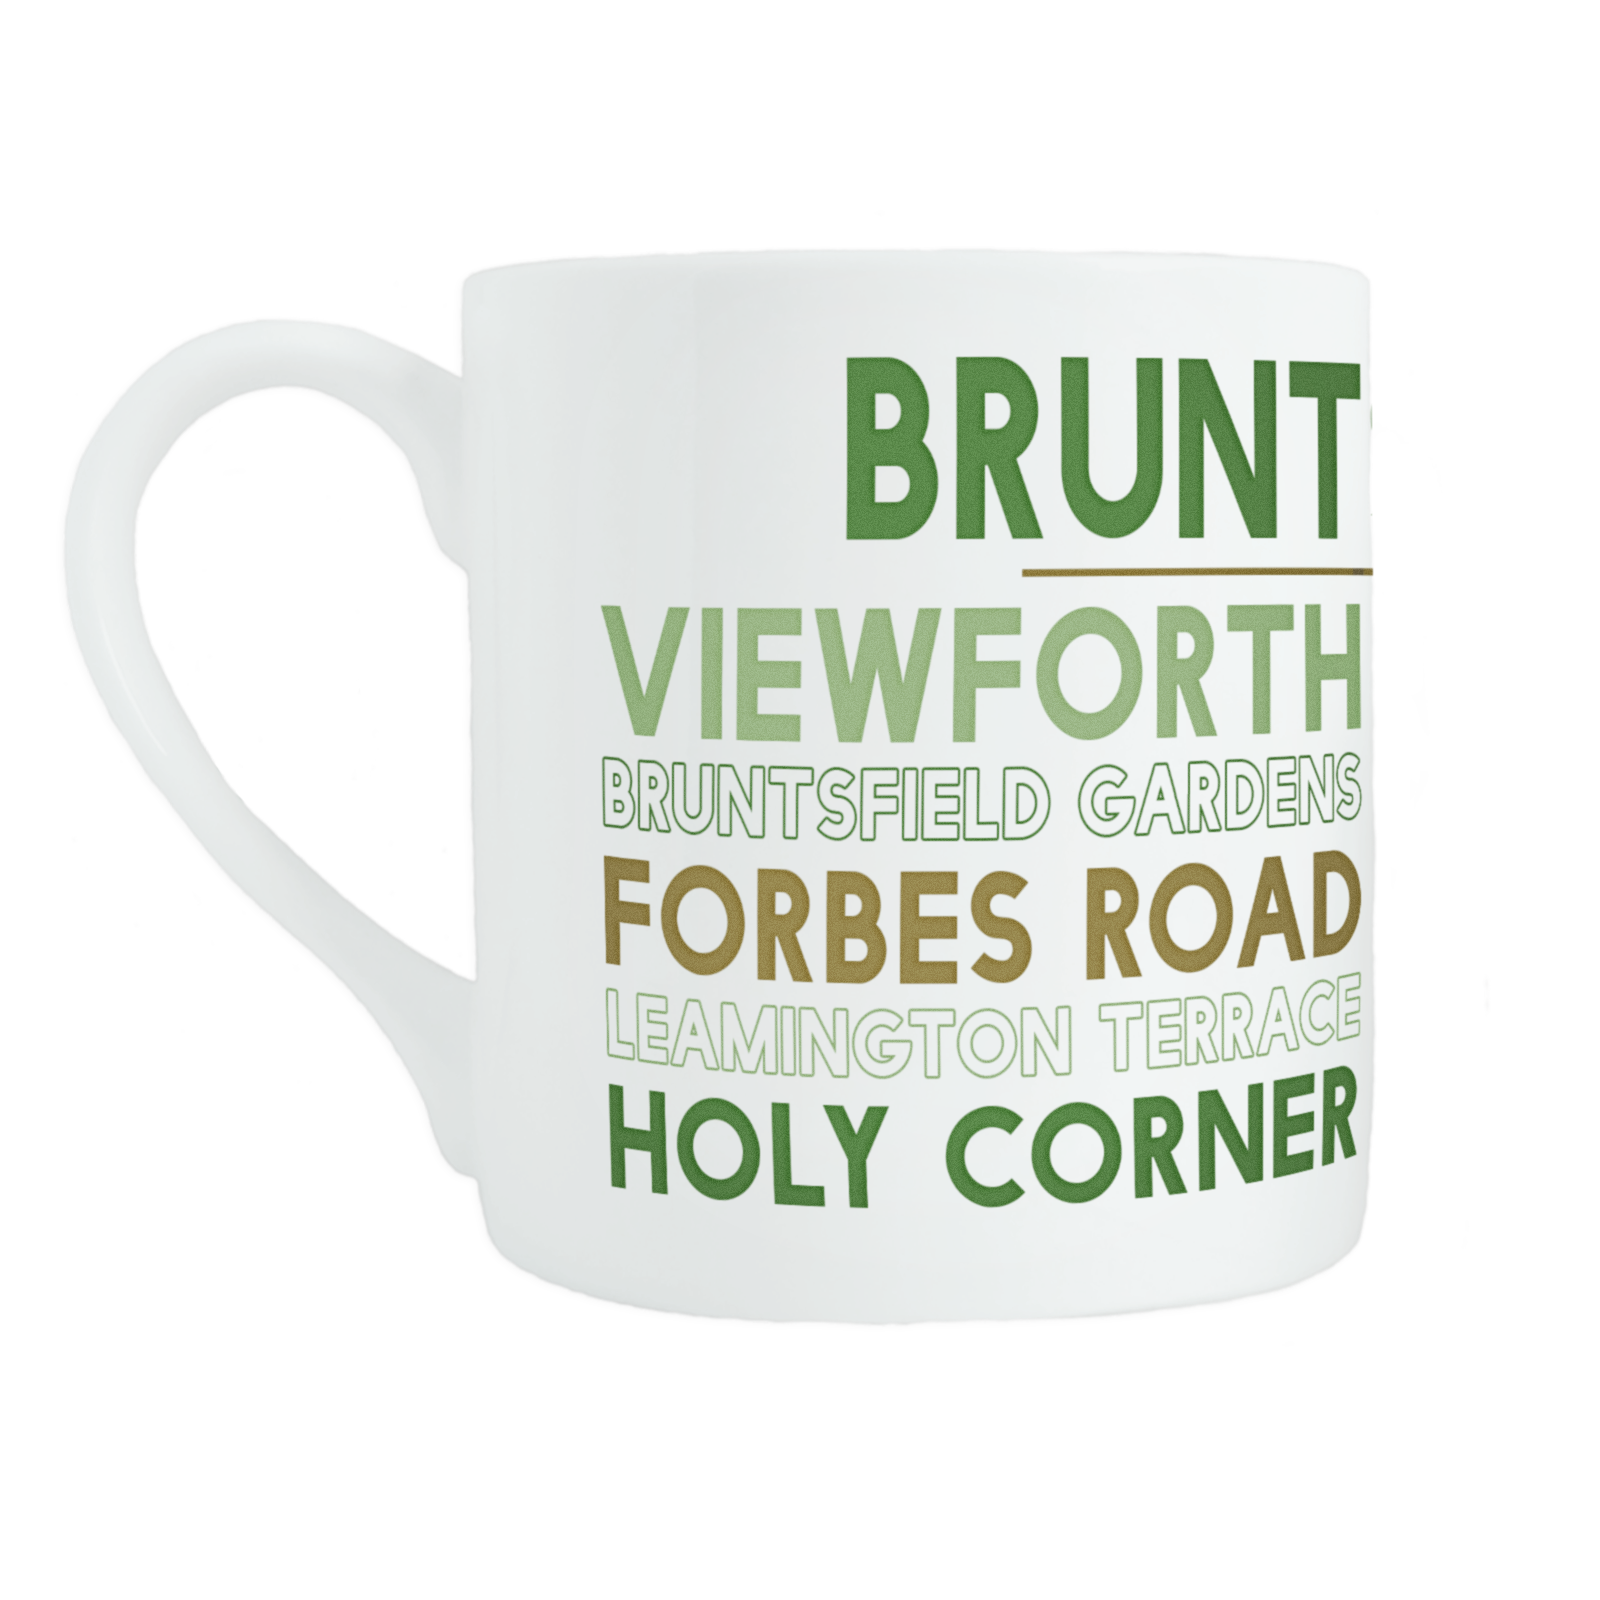 Bruntsfield mug